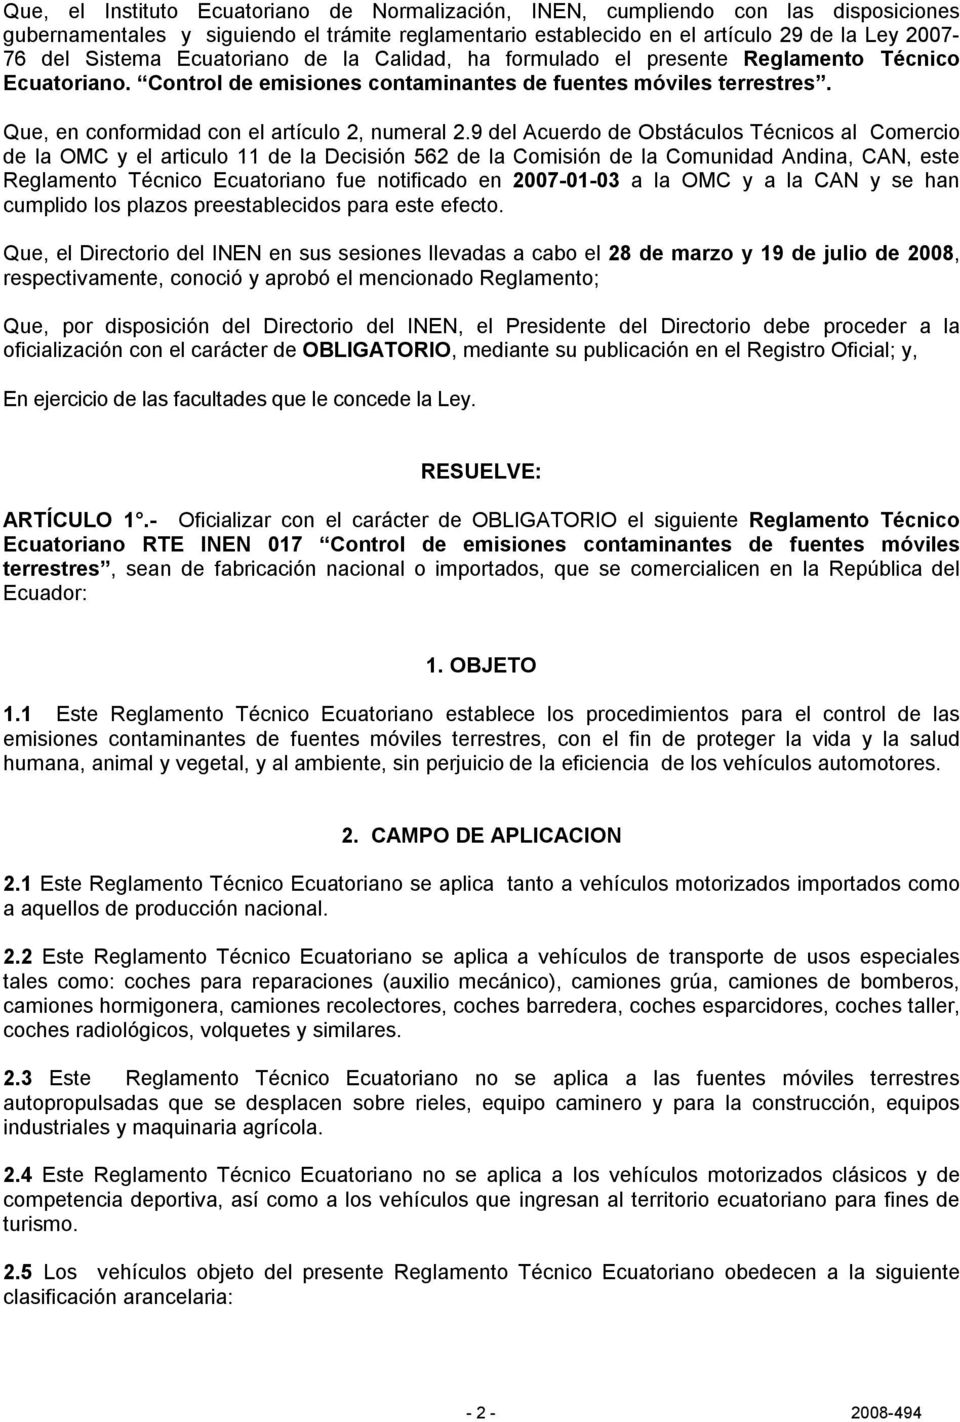 9 del Acuerdo de Obstáculos Técnicos al Comercio de la OMC y el articulo 11 de la Decisión 562 de la Comisión de la Comunidad Andina, CAN, este Reglamento Técnico Ecuatoriano fue notificado en